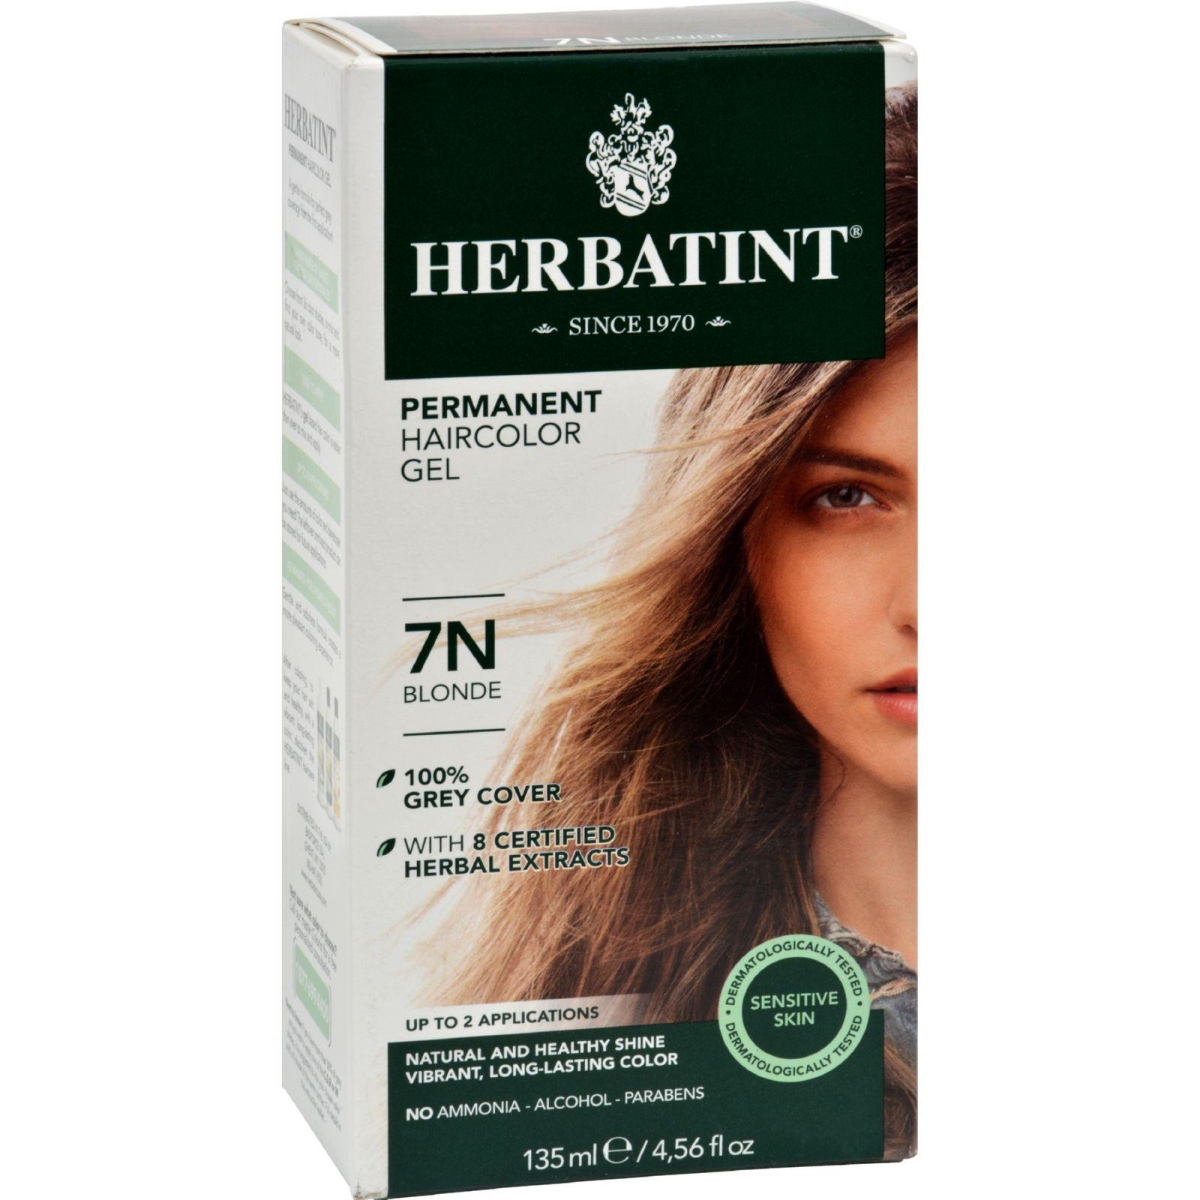 Hg0226688 135 Ml Permanent Herbal Haircolor Gel, 7n Blonde